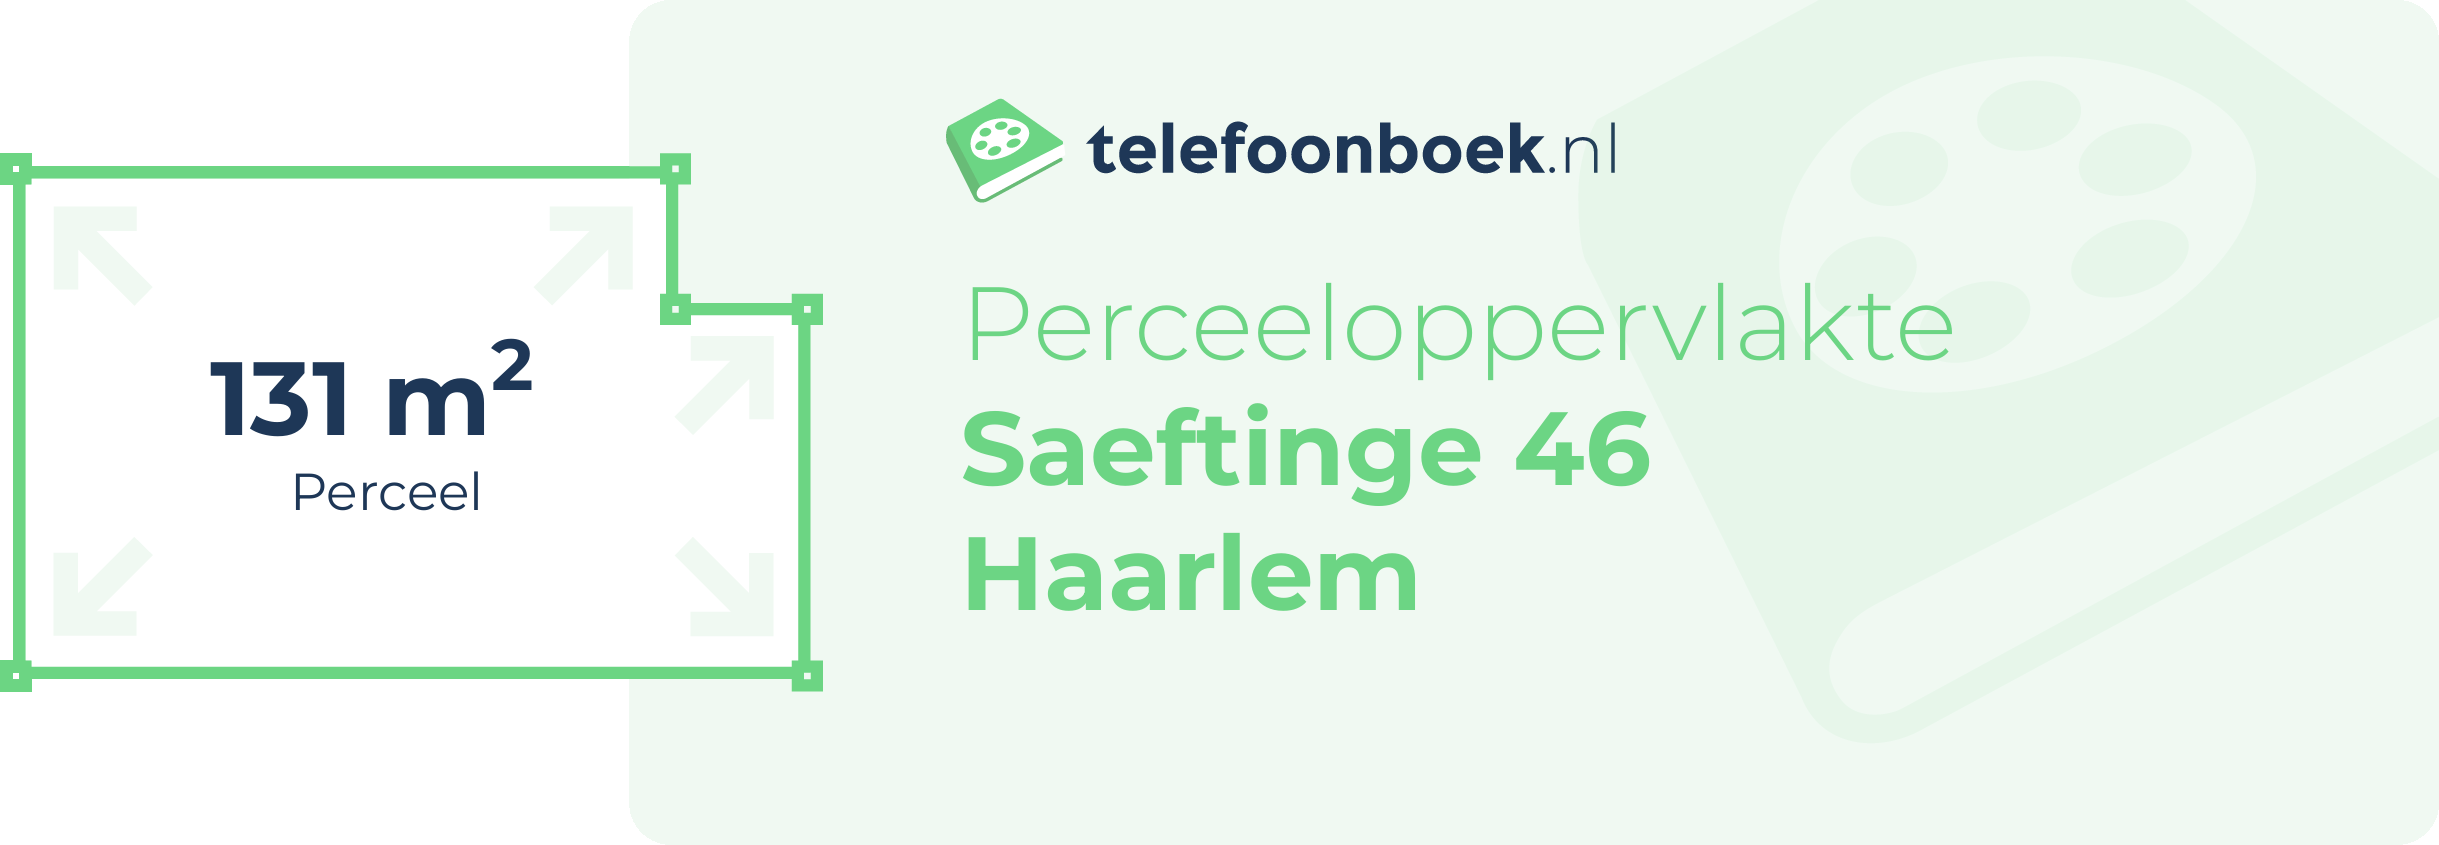 Perceeloppervlakte Saeftinge 46 Haarlem